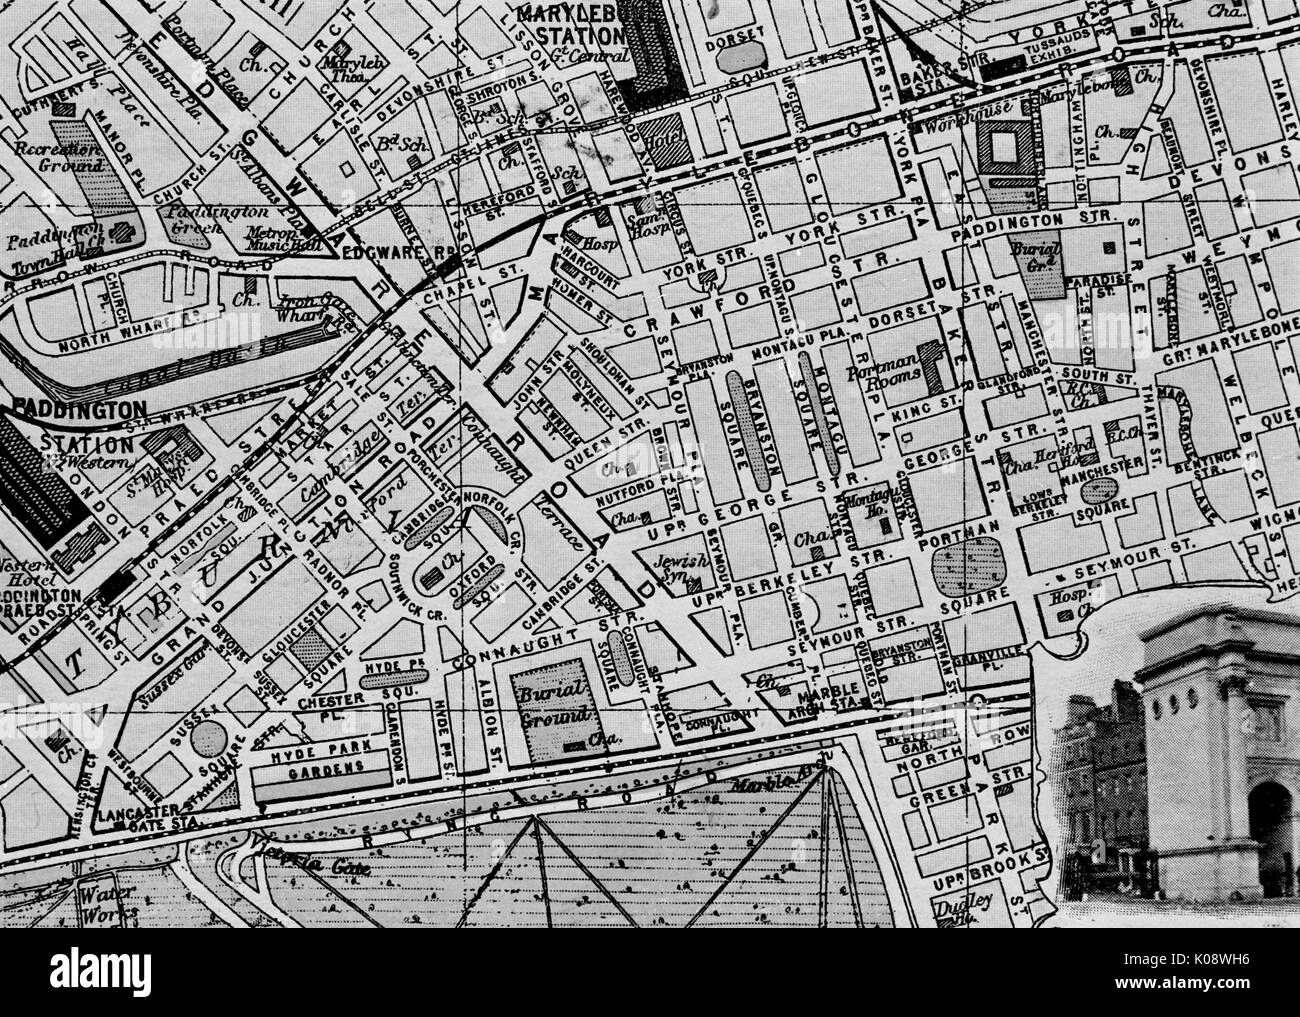 Mappa di St area di Marylebone, London. Data: circa 1900 Foto Stock